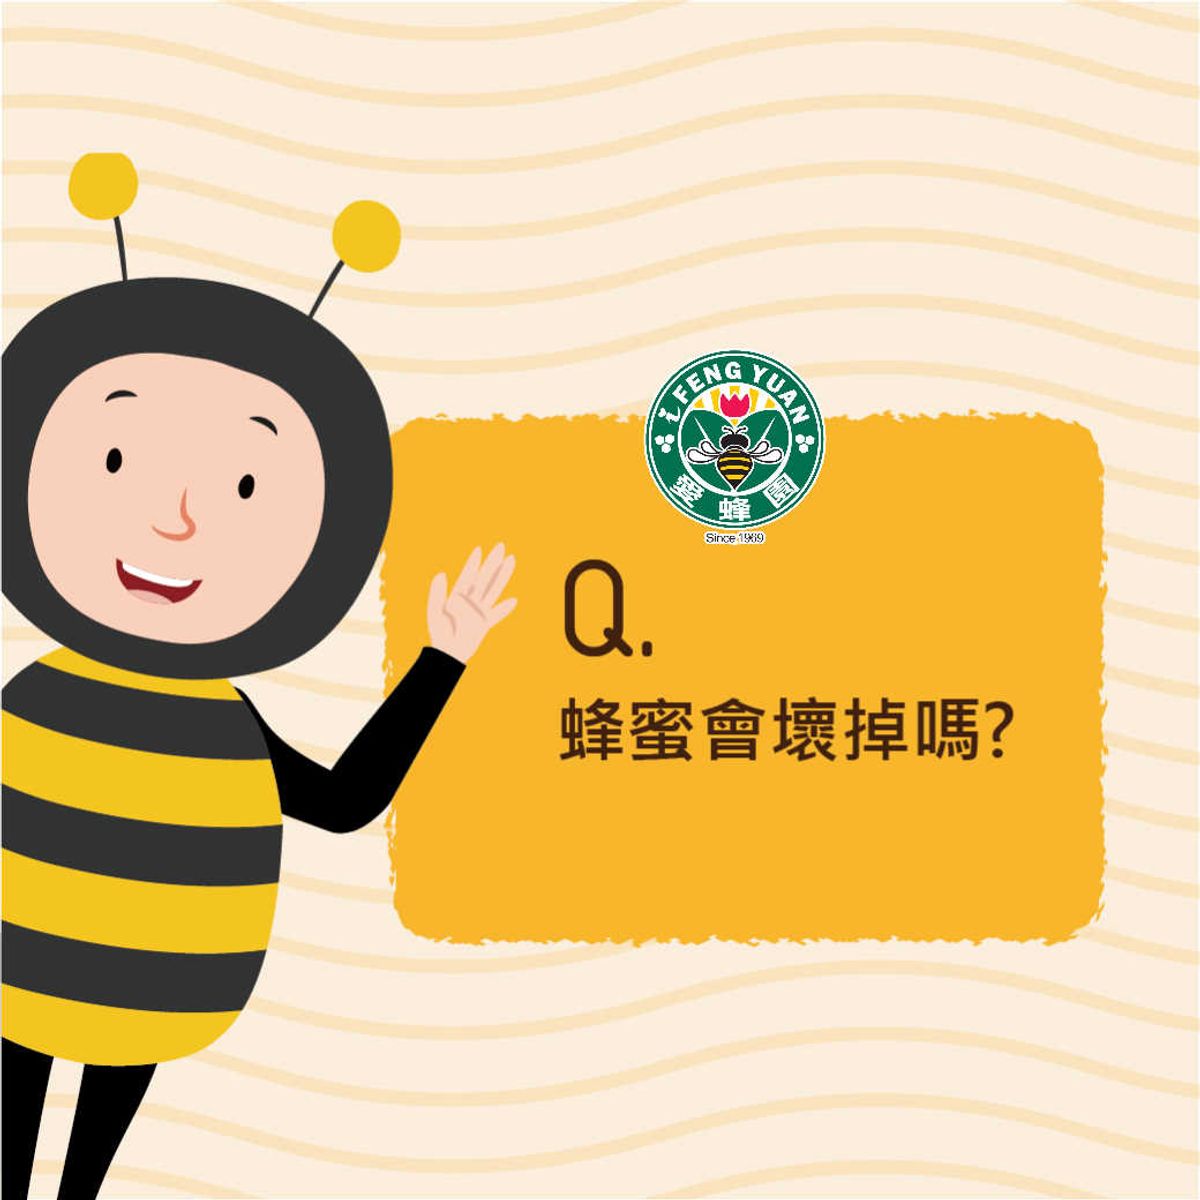 【愛蜂園小學堂】 蜂蜜會壞掉嗎? 要如何保存呢？